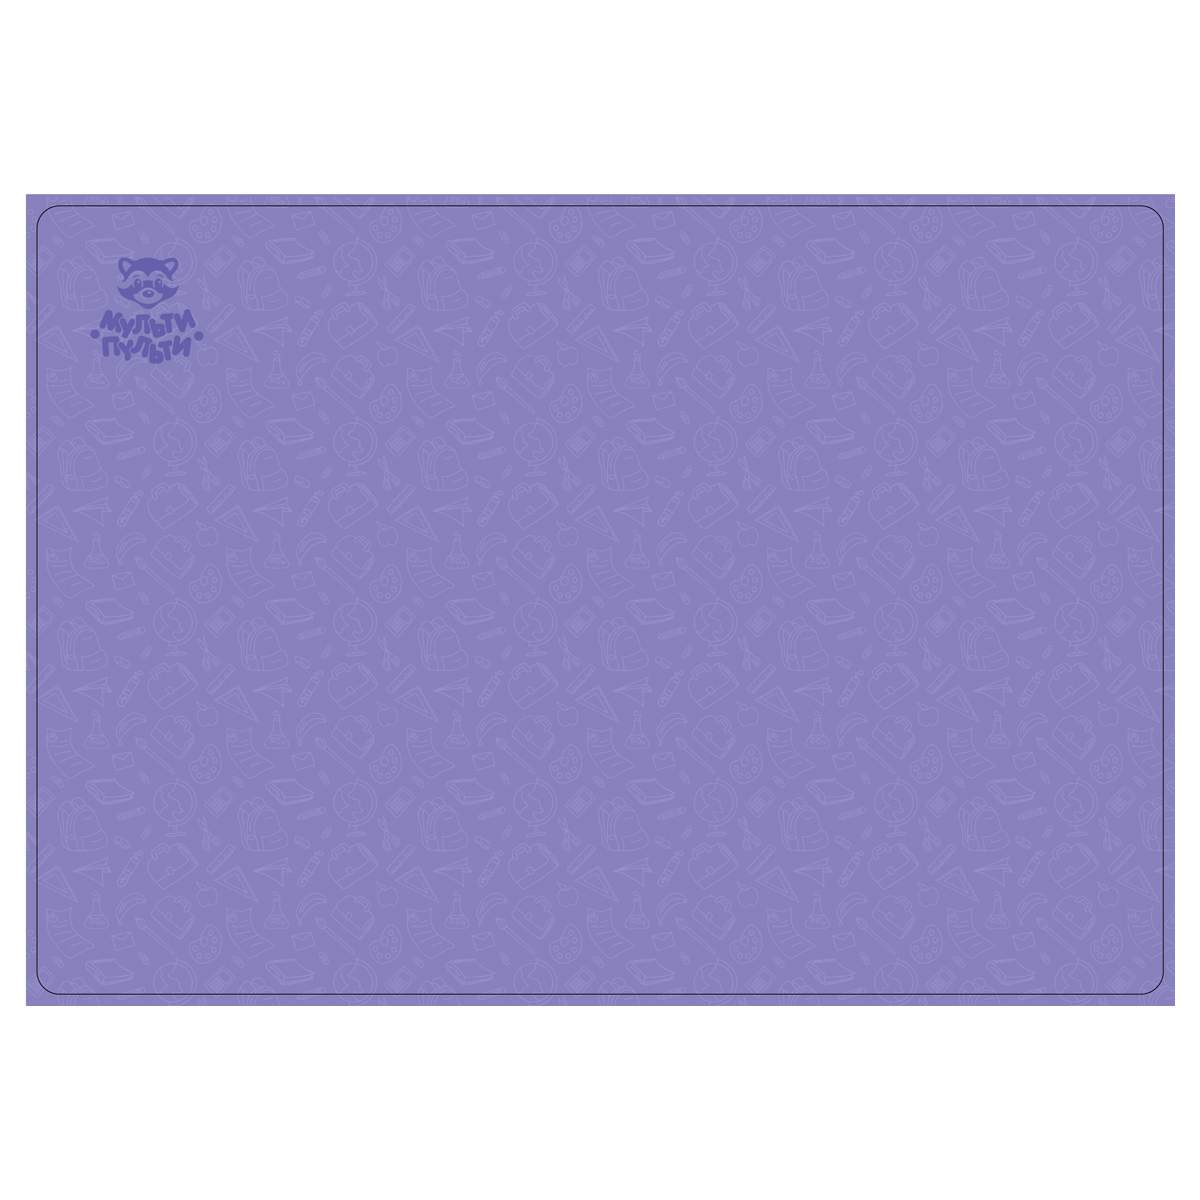 Клеенка для уроков труда Мульти-Пульти Фиолет 350993, 35x50см, 5 шт